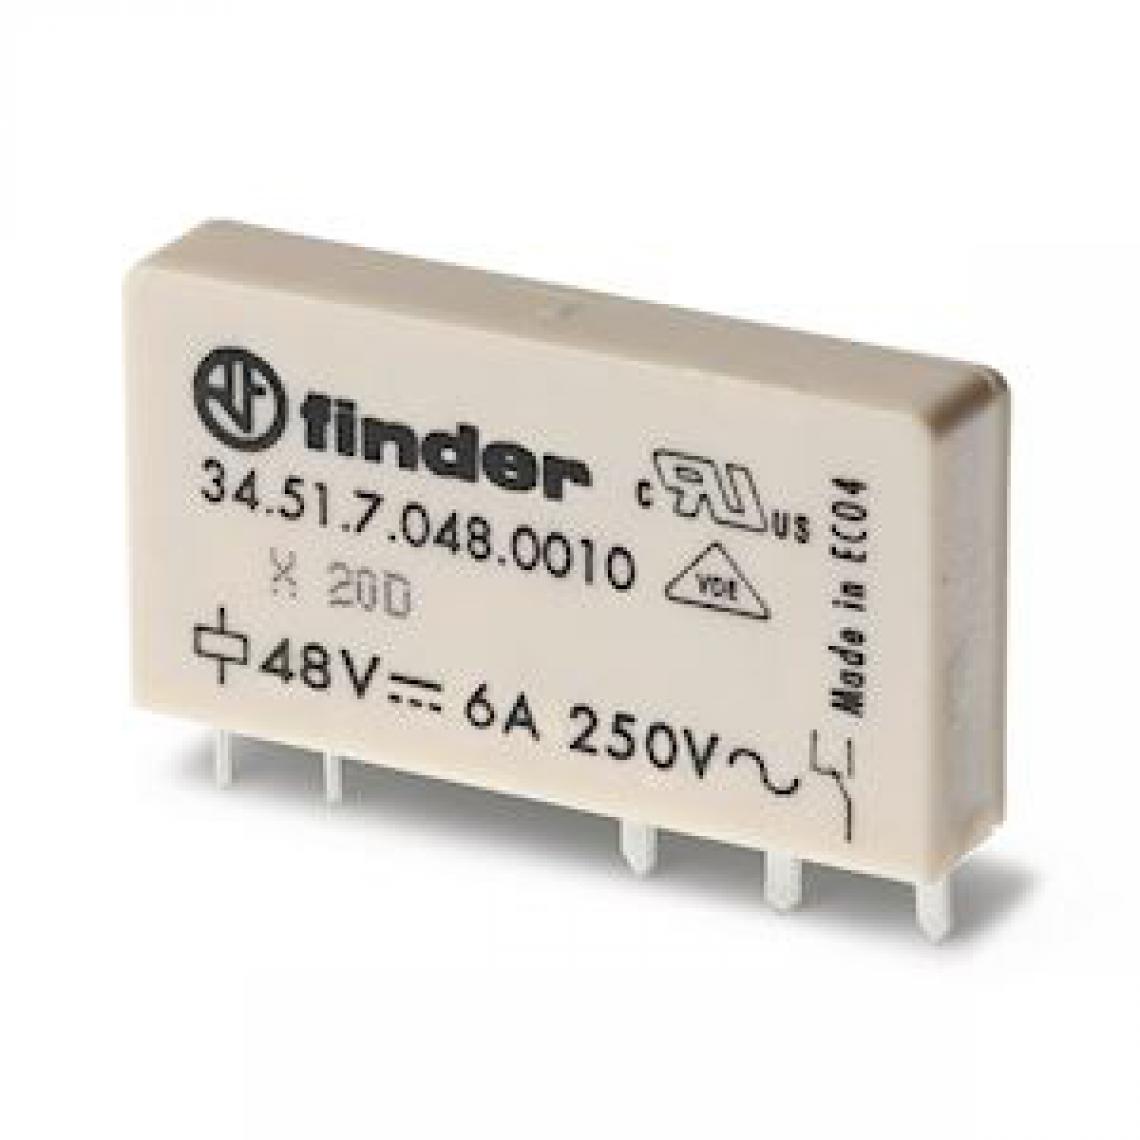 Finder - relais circuit imprimé - 1rt - 6a - 24vdc + agni - finder 345170245010 - Autres équipements modulaires